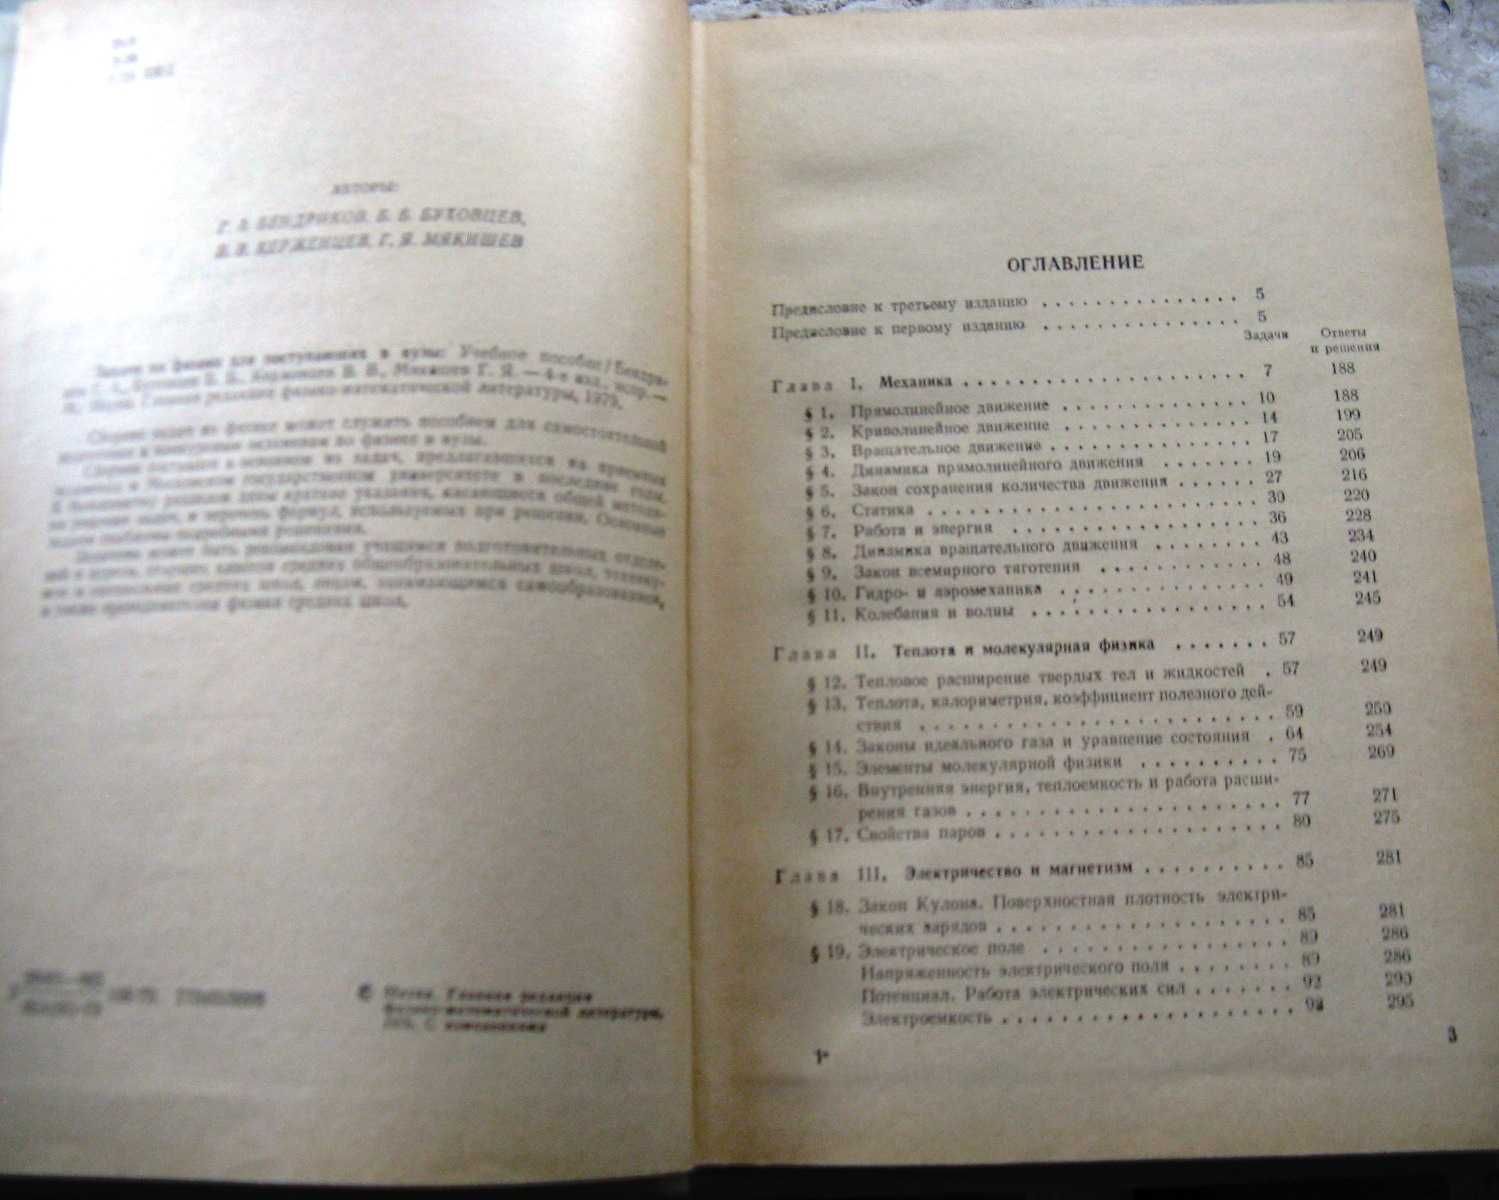 Задачи по физике для поступающих в вузы Г.А. Бендриков, Б.Б. Буховцев